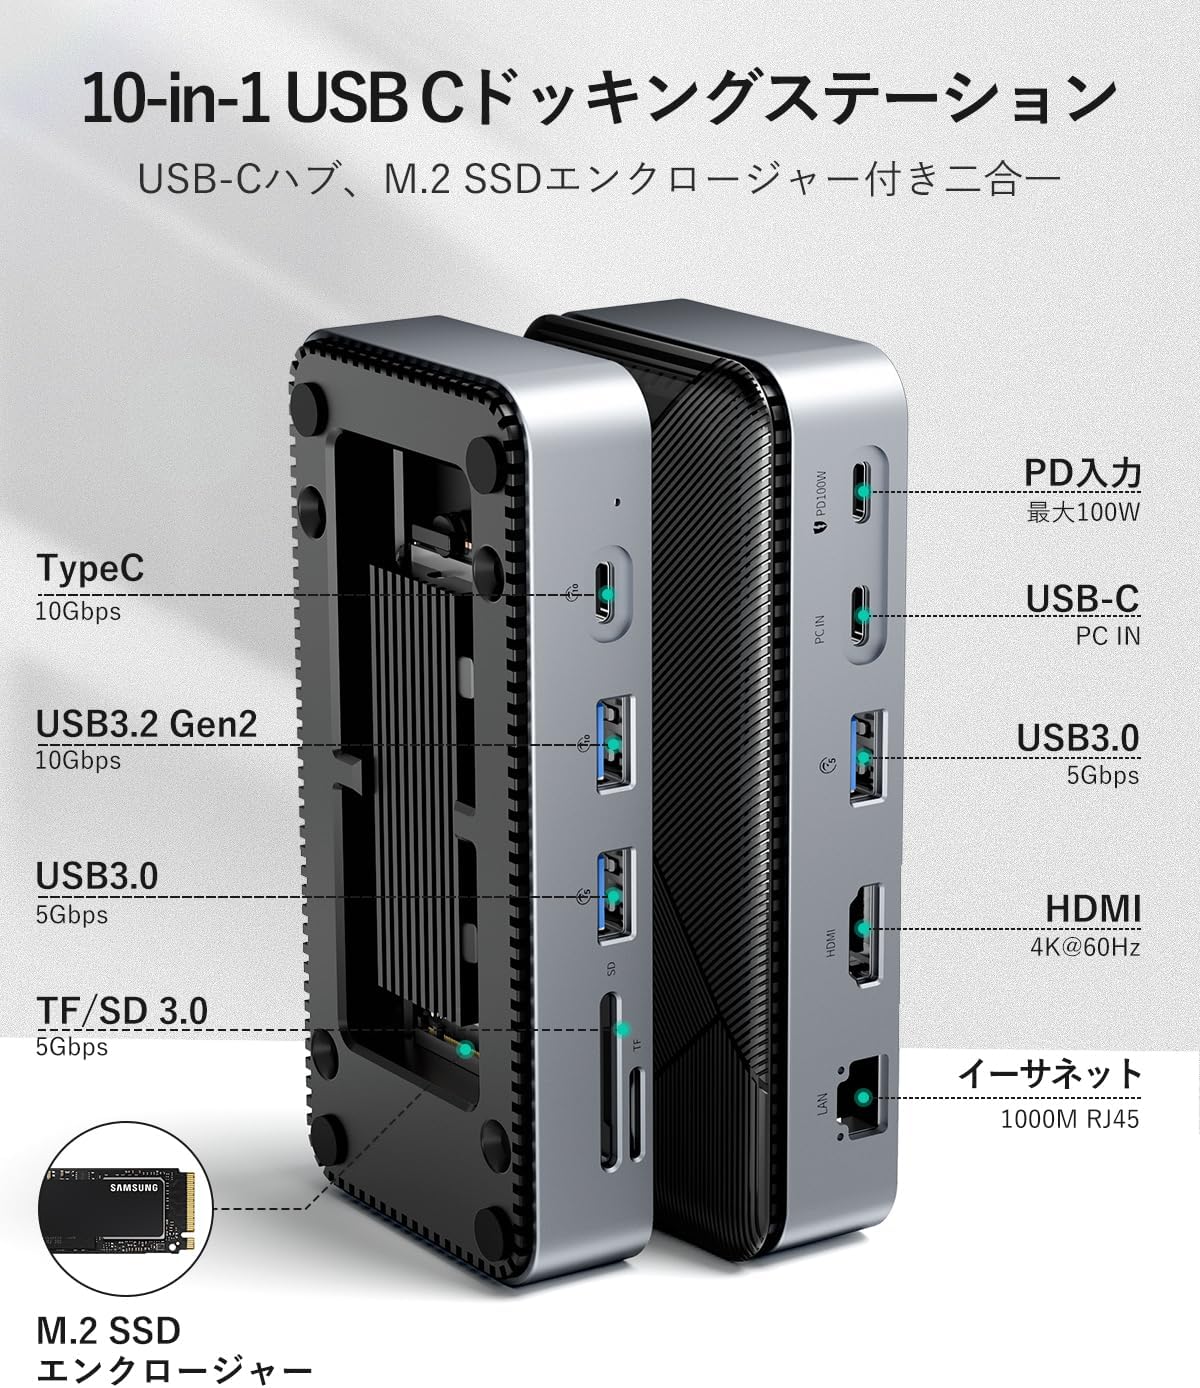 GiGimundo 10-in-1 M.2 SSD 外付けケース 10Gbps USB 3.2 Gen2 M.2